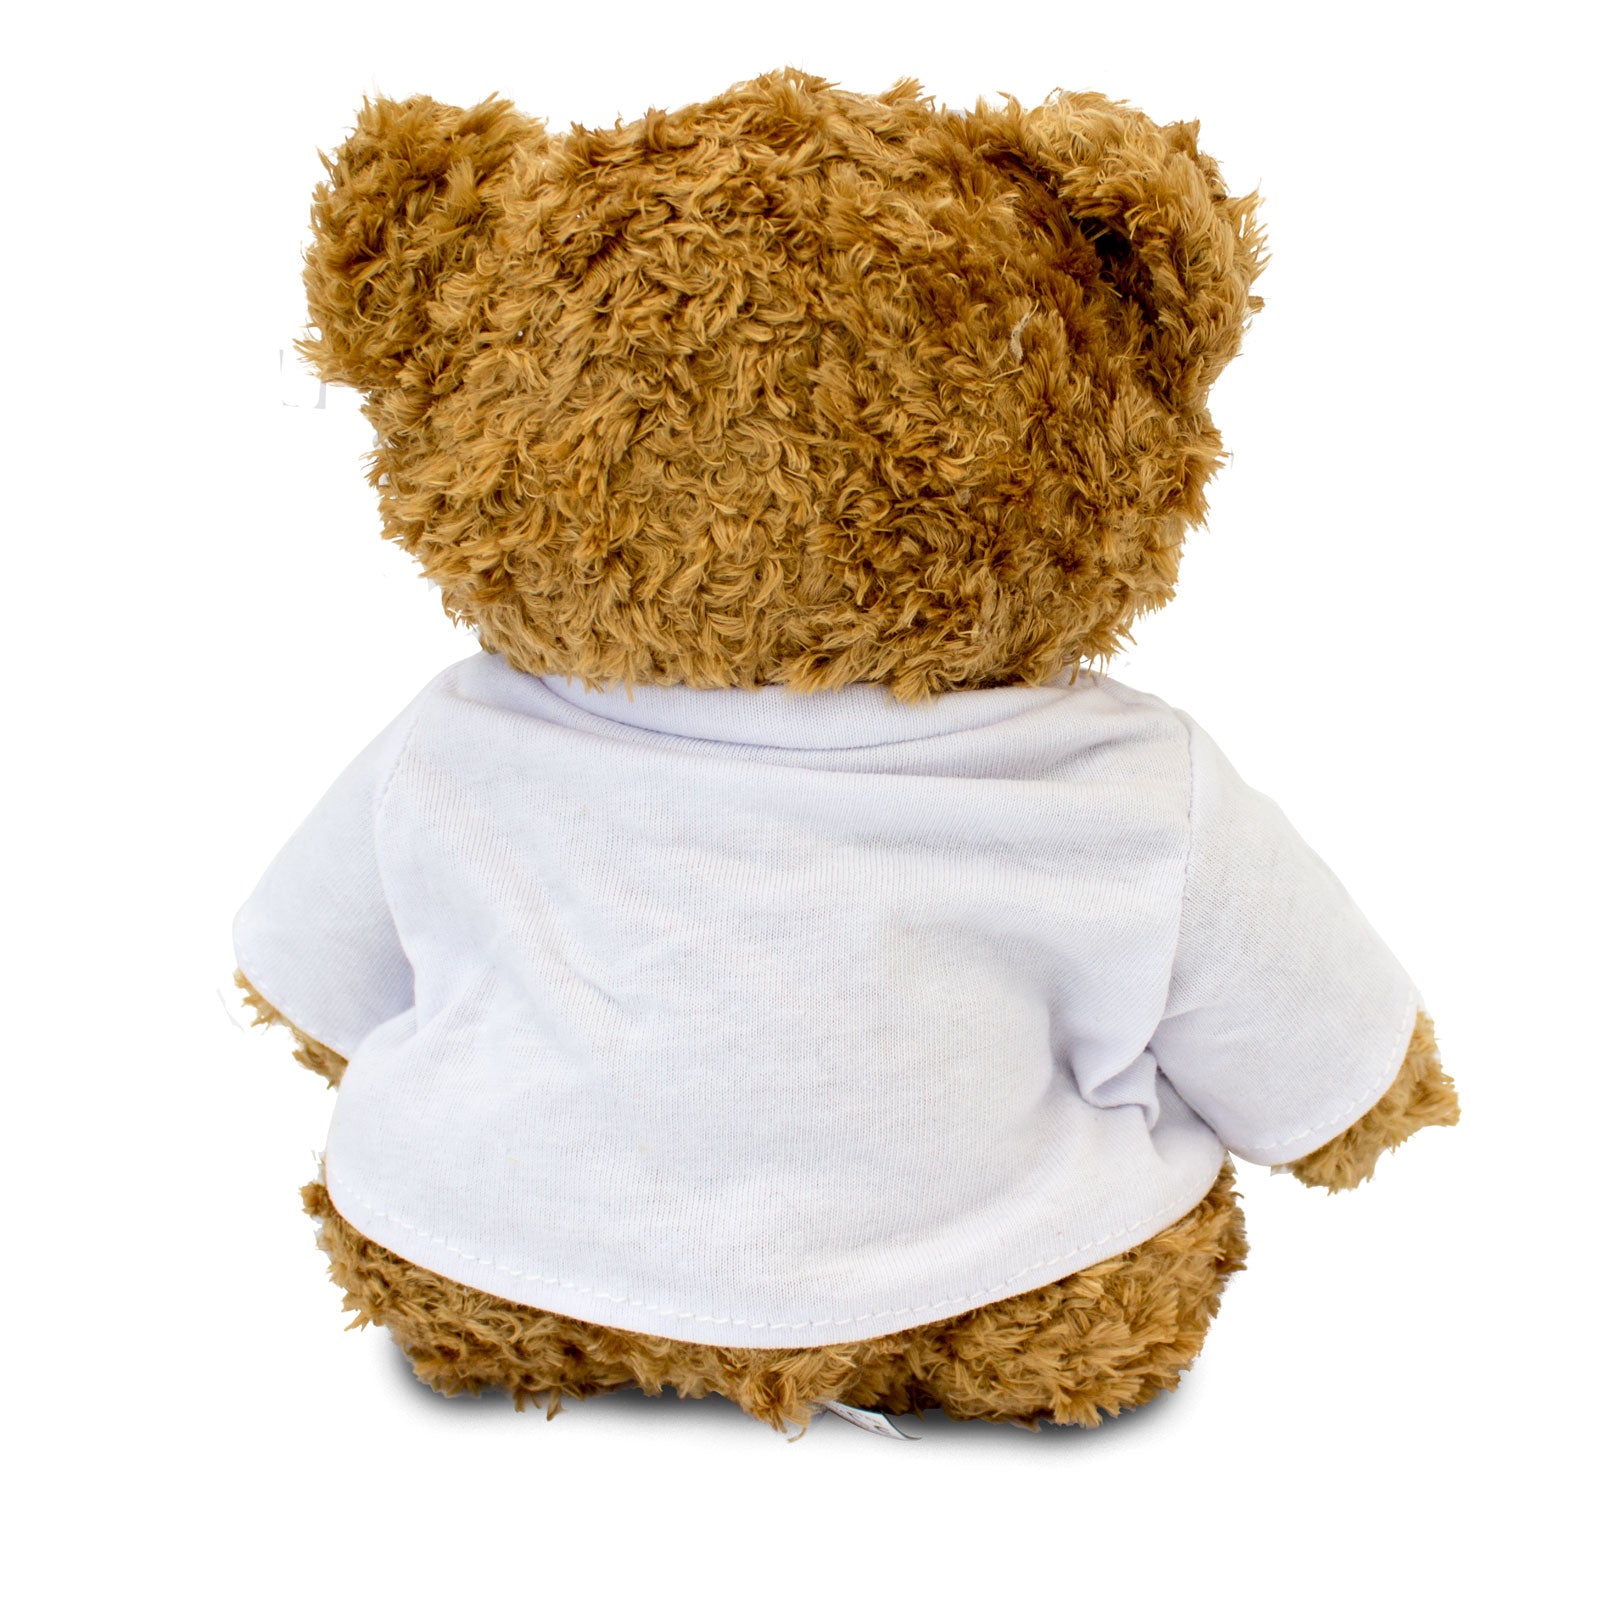 Get Well Soon Jake - Teddy Bear